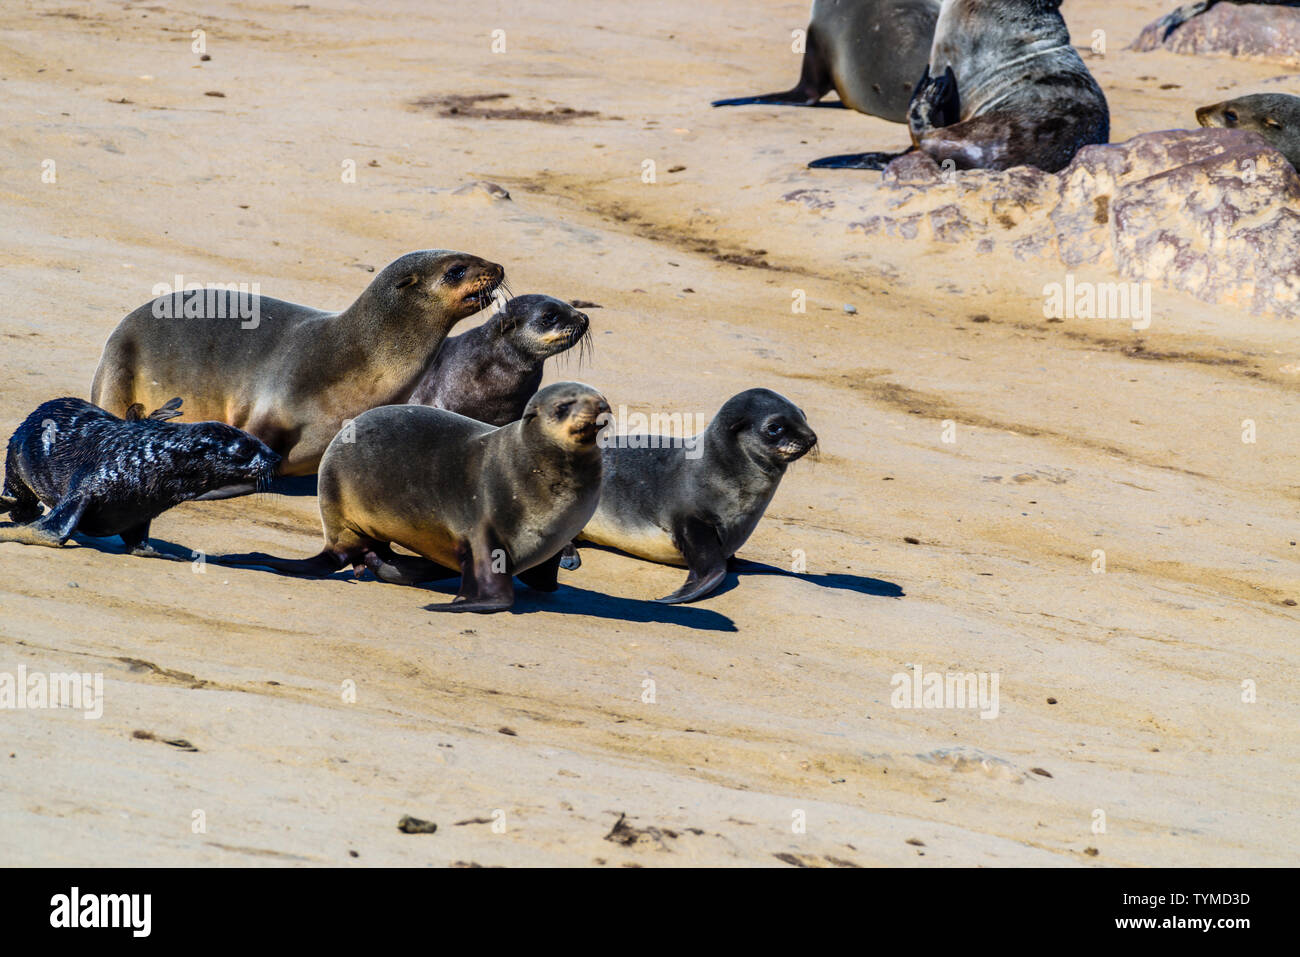 Les jeunes phoques descendre une pente de sable à l'une des plus grandes colonies d'Otaries à fourrure du Cap dans le monde, Cape Cross, Skeleton Coast, Namibie Banque D'Images